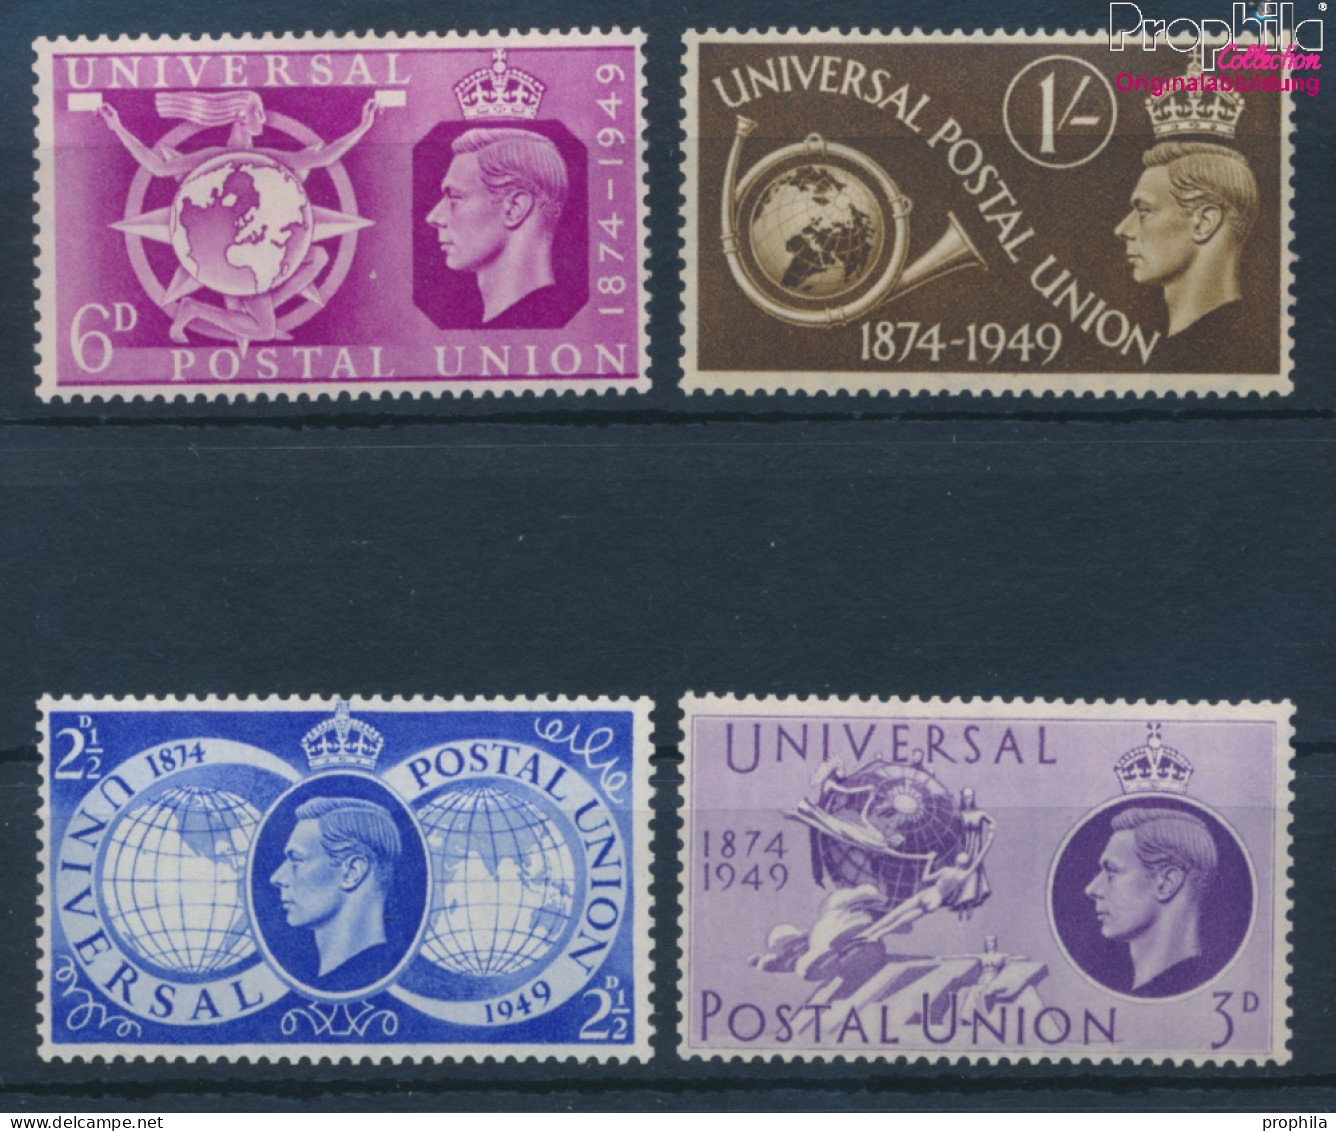 Großbritannien 241-244 (kompl.Ausg.) Postfrisch 1949 75 Jahre UPU (10398203 - Ungebraucht